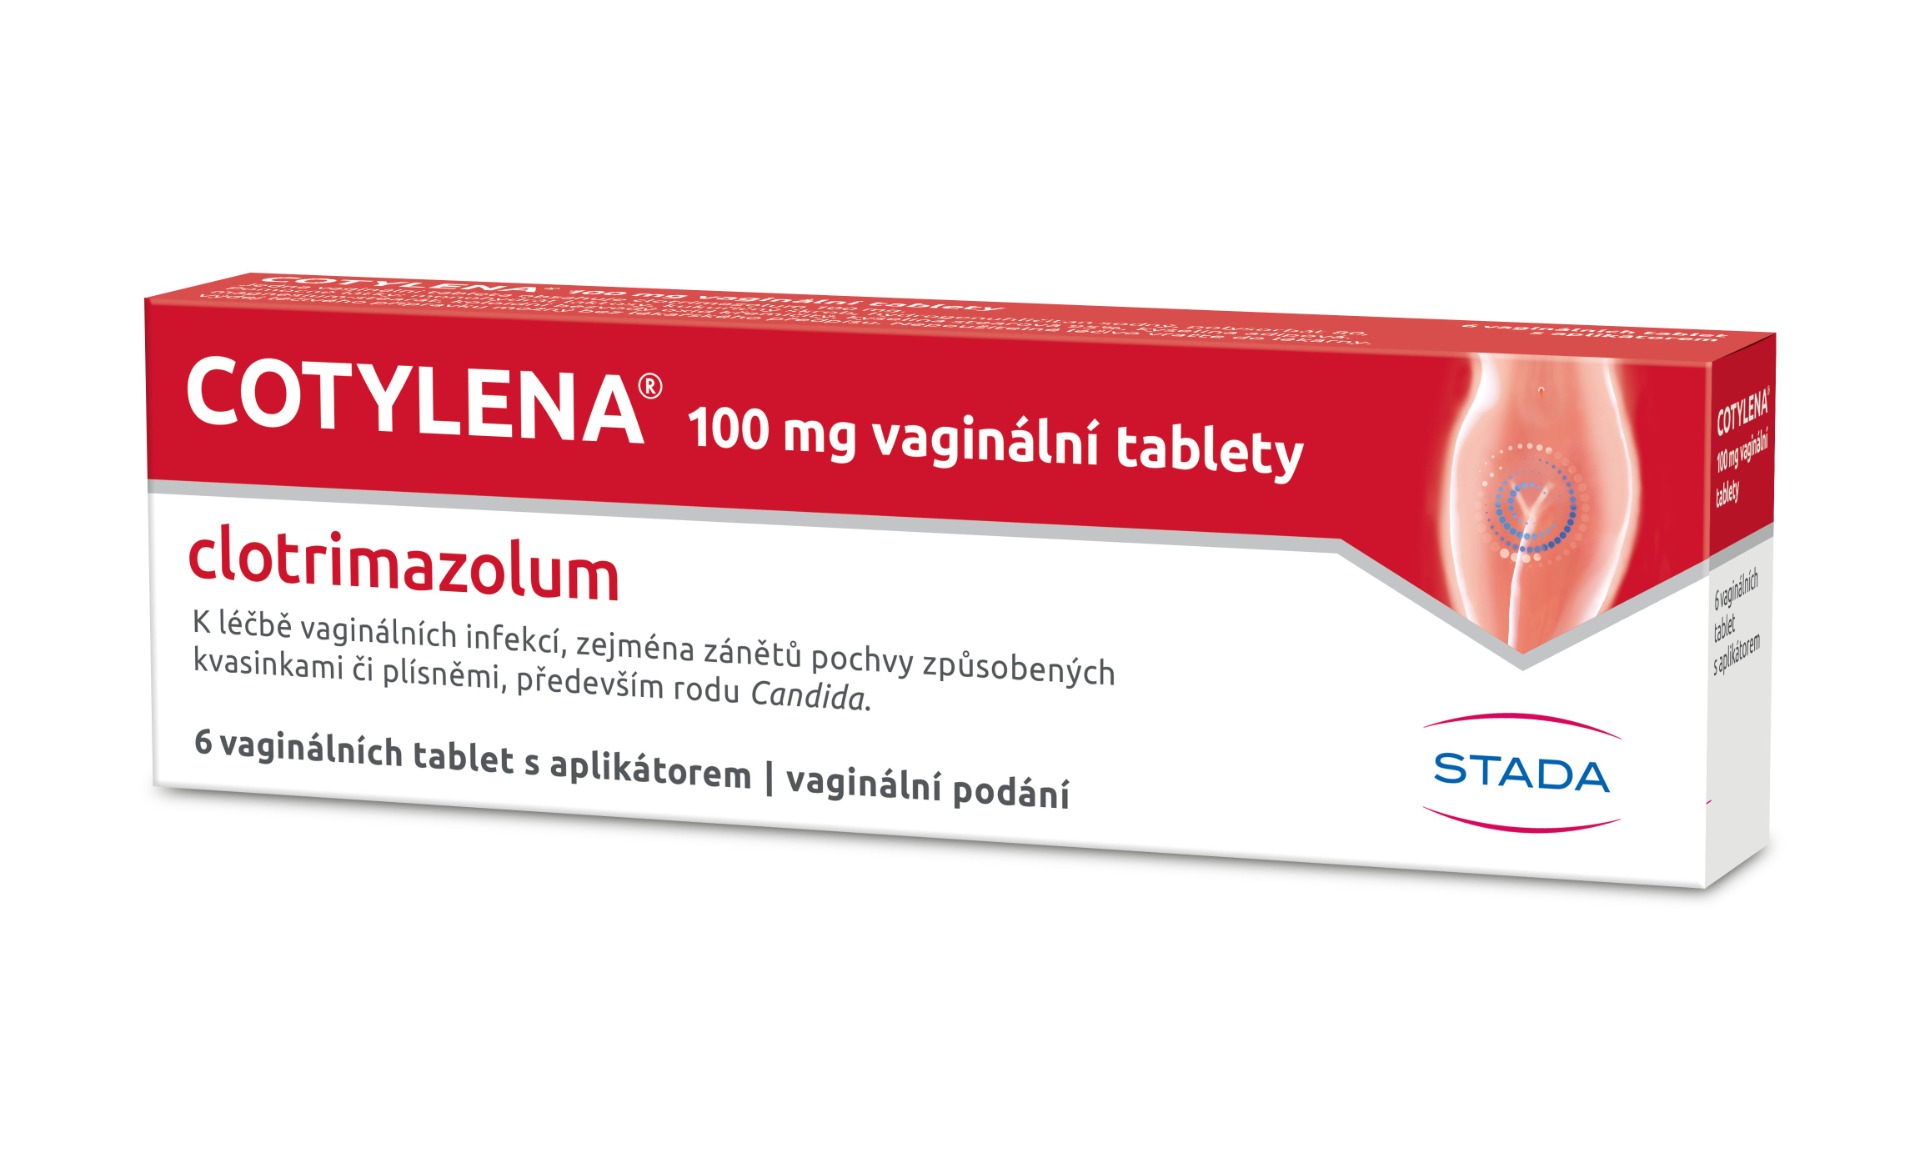 Cotylena 100 mg 6 vaginálních tablet Cotylena